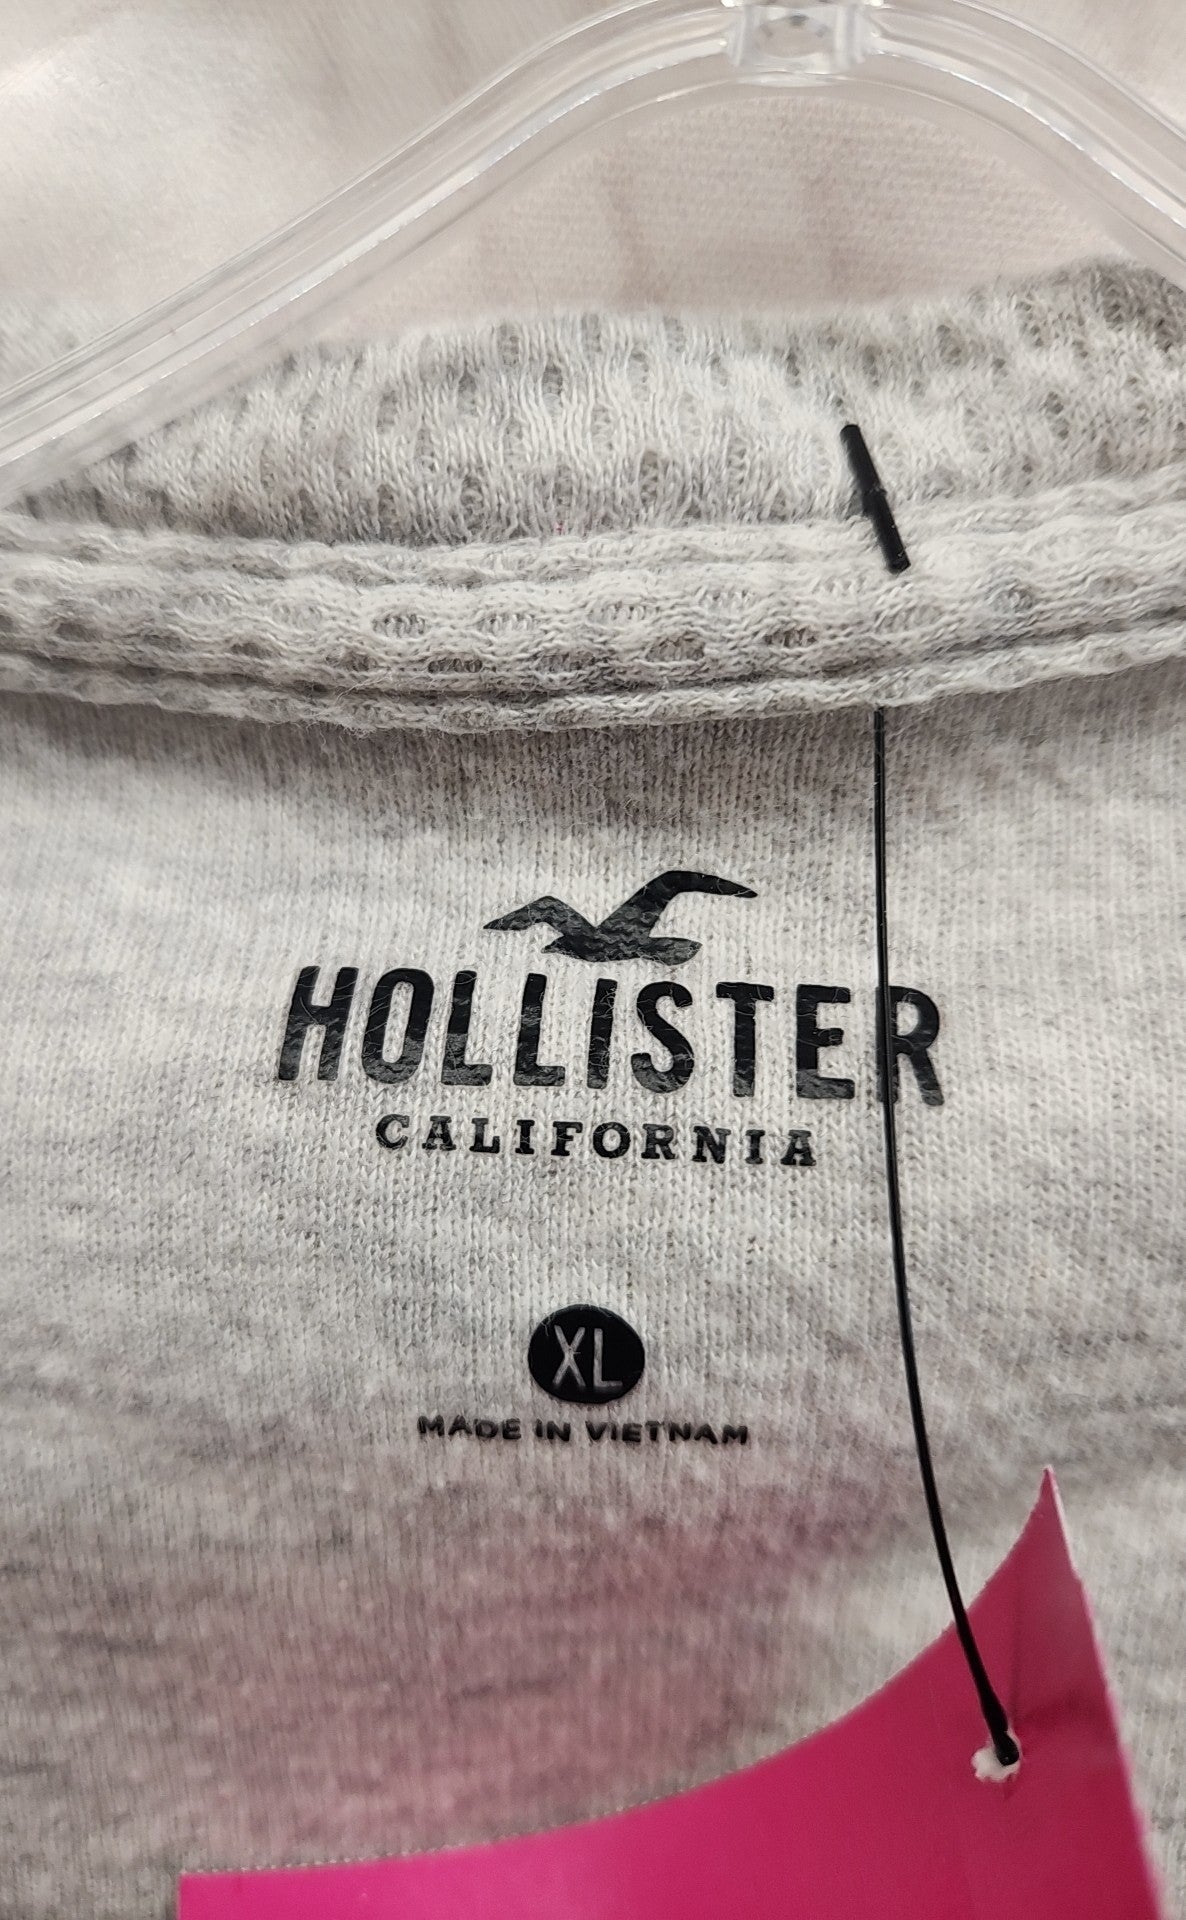 Hollister Men's Size XL Gray Shirt